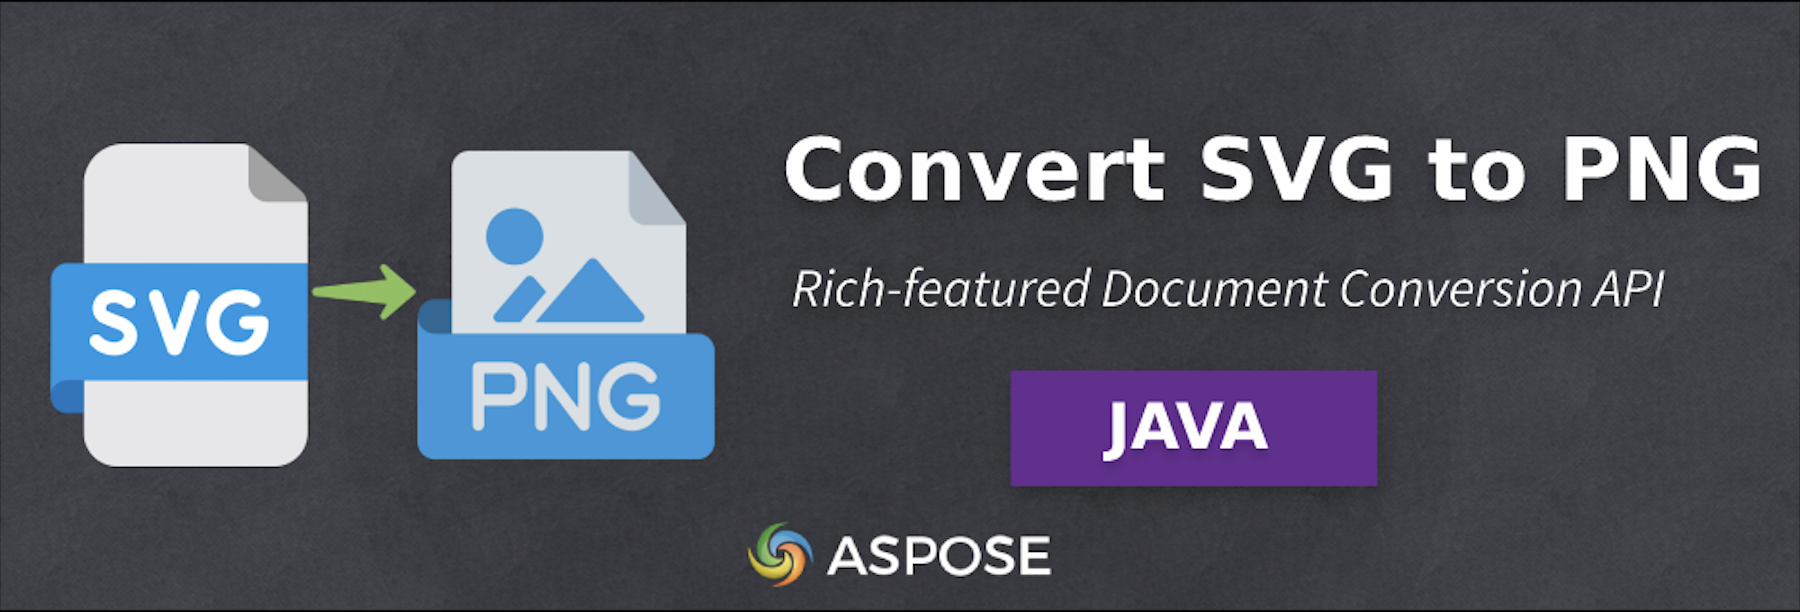 Konvertieren Sie SVG in PNG in Java – Bildkonvertierungssoftware